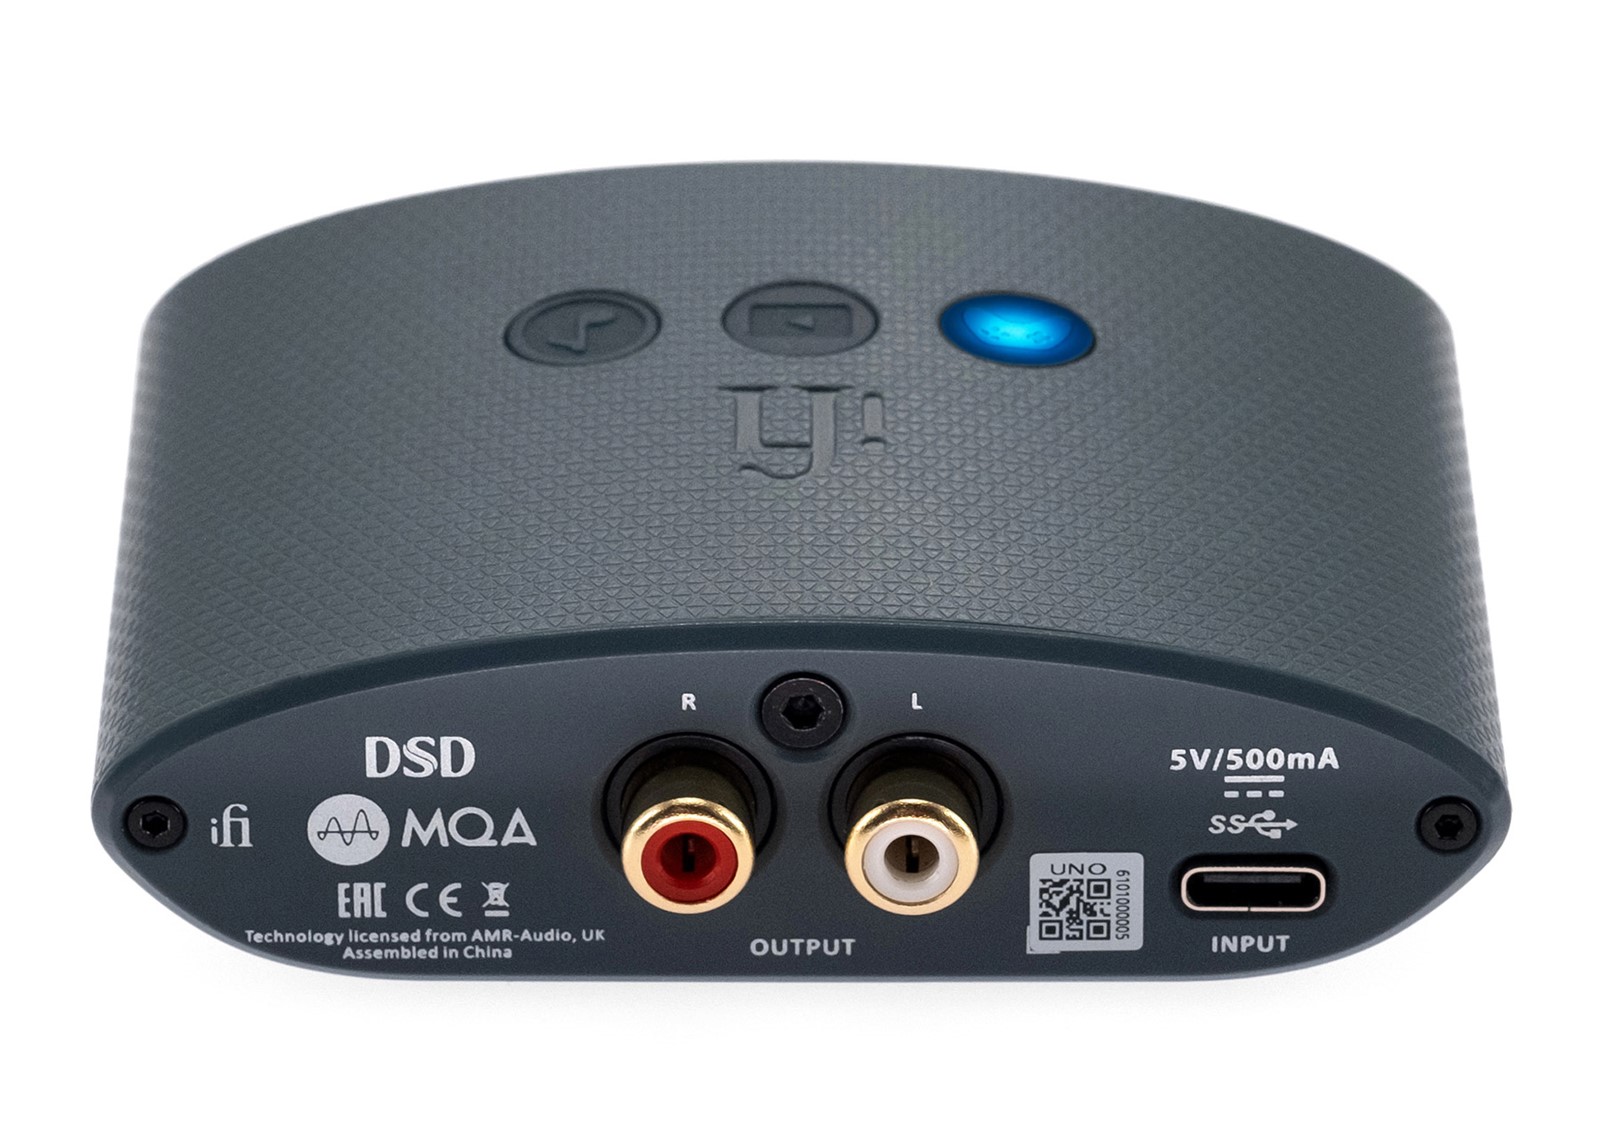 Povezivanje s izvorima zvuka obavlja se preko USB-C sučelja. Uno također<br />
raspolaže RCA izlazima, pa se može povezati s drugim pojačalom<br />
i koristiti isključivo kao DAC